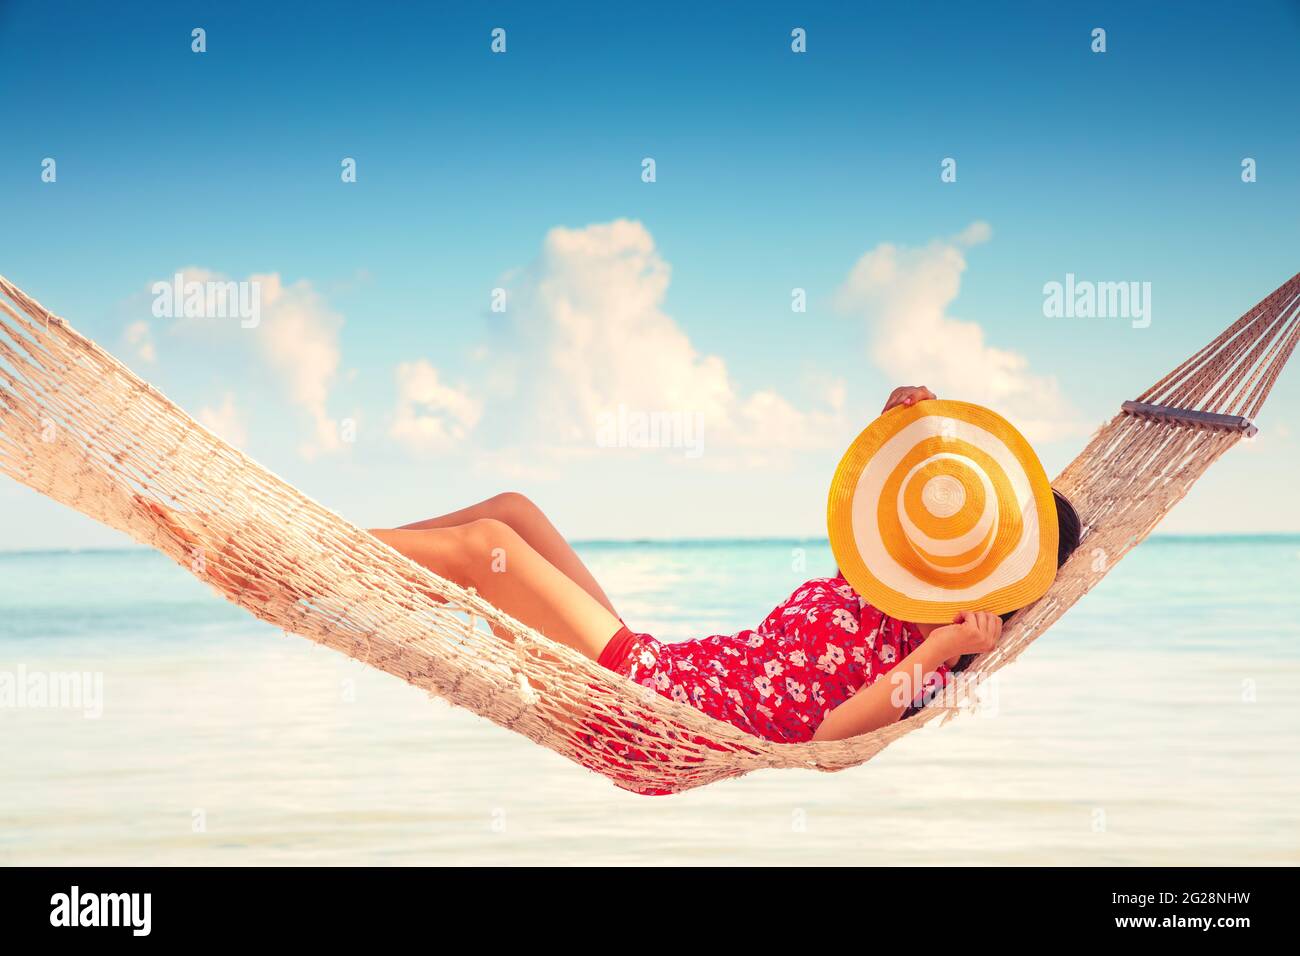 Niña descansando en una hamaca bajo altas palmeras, playa tropical Foto de stock